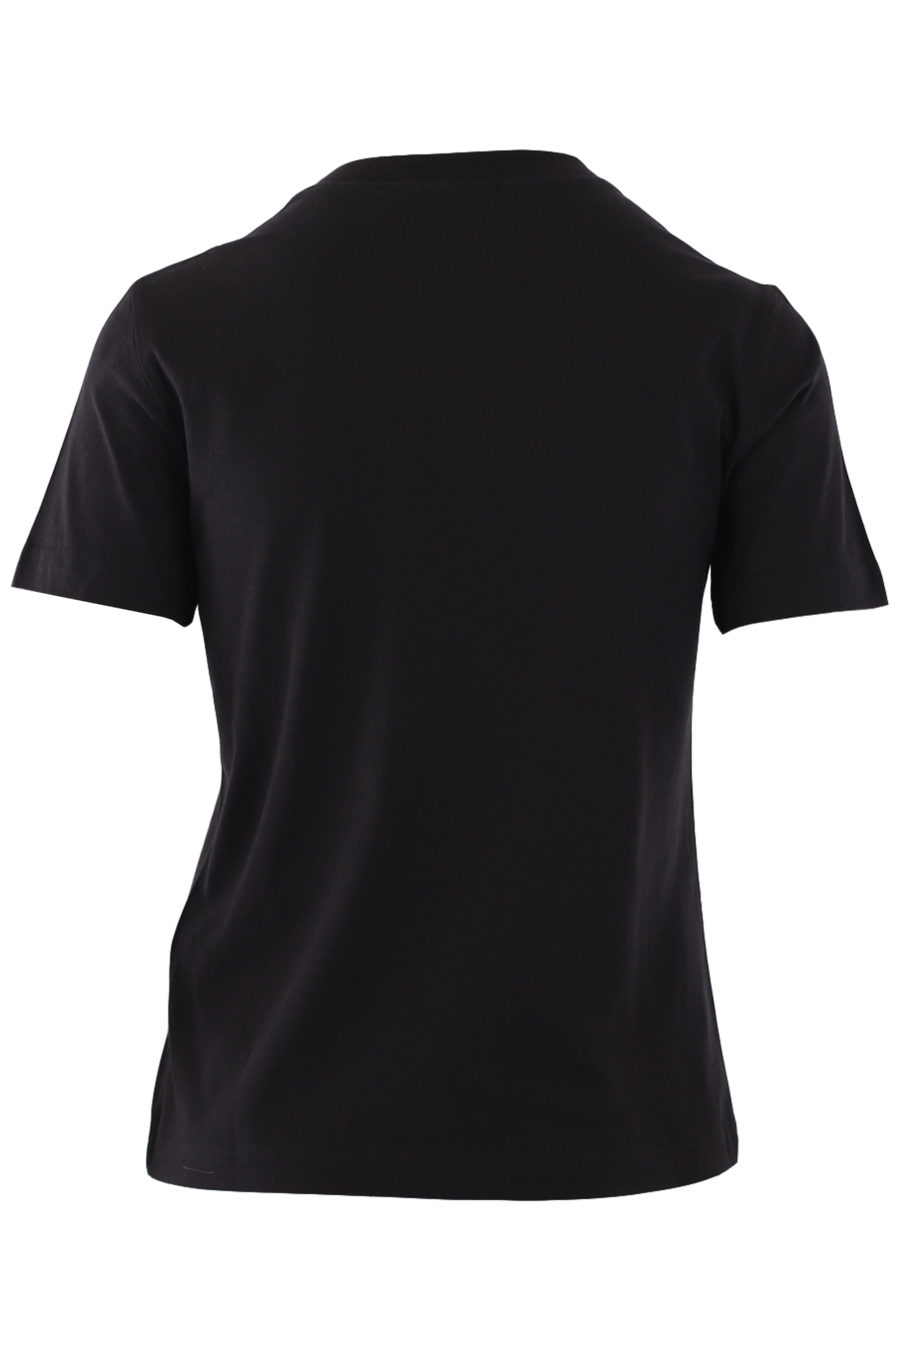 Schwarzes T-Shirt mit mehrfarbigem Logo in der Mitte - IMG 0829